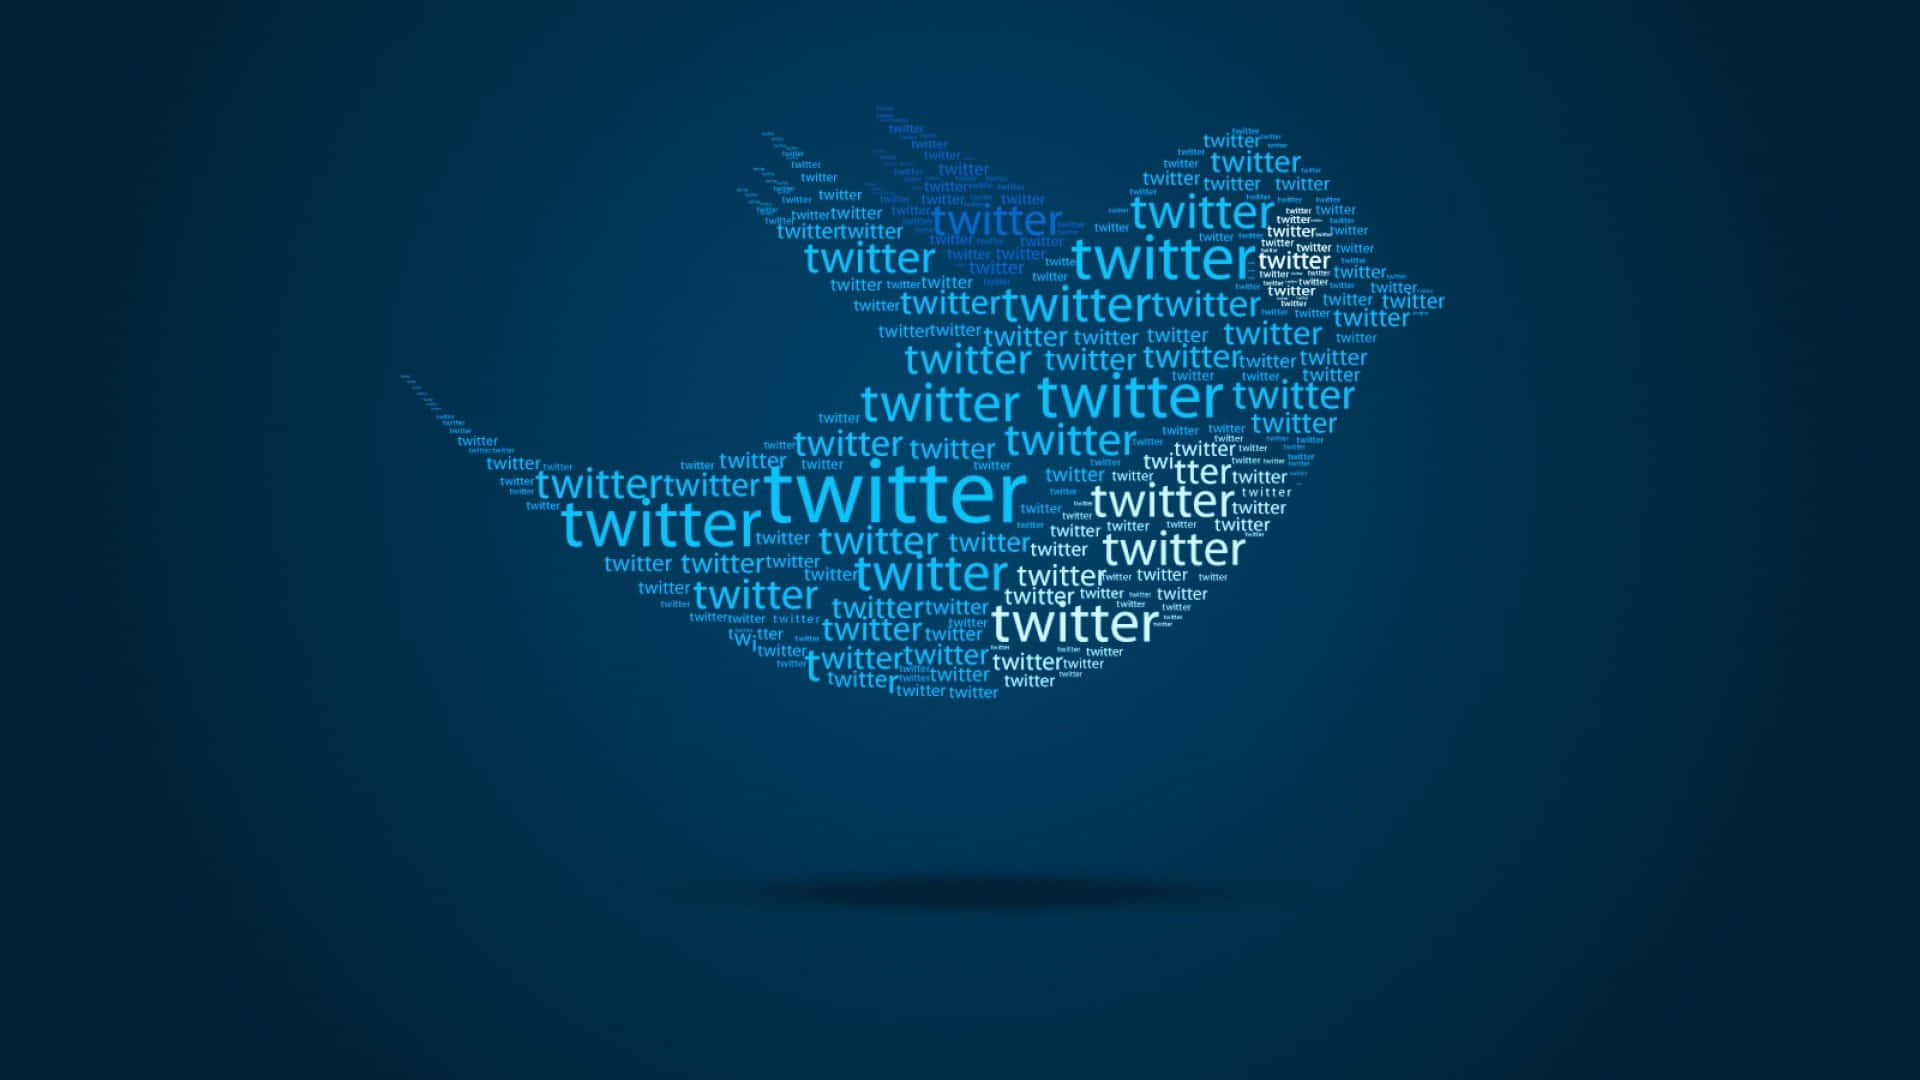 Sfondosociale 1920x1080 Con Uccello Di Twitter Formato Da Parole Di Twitter.